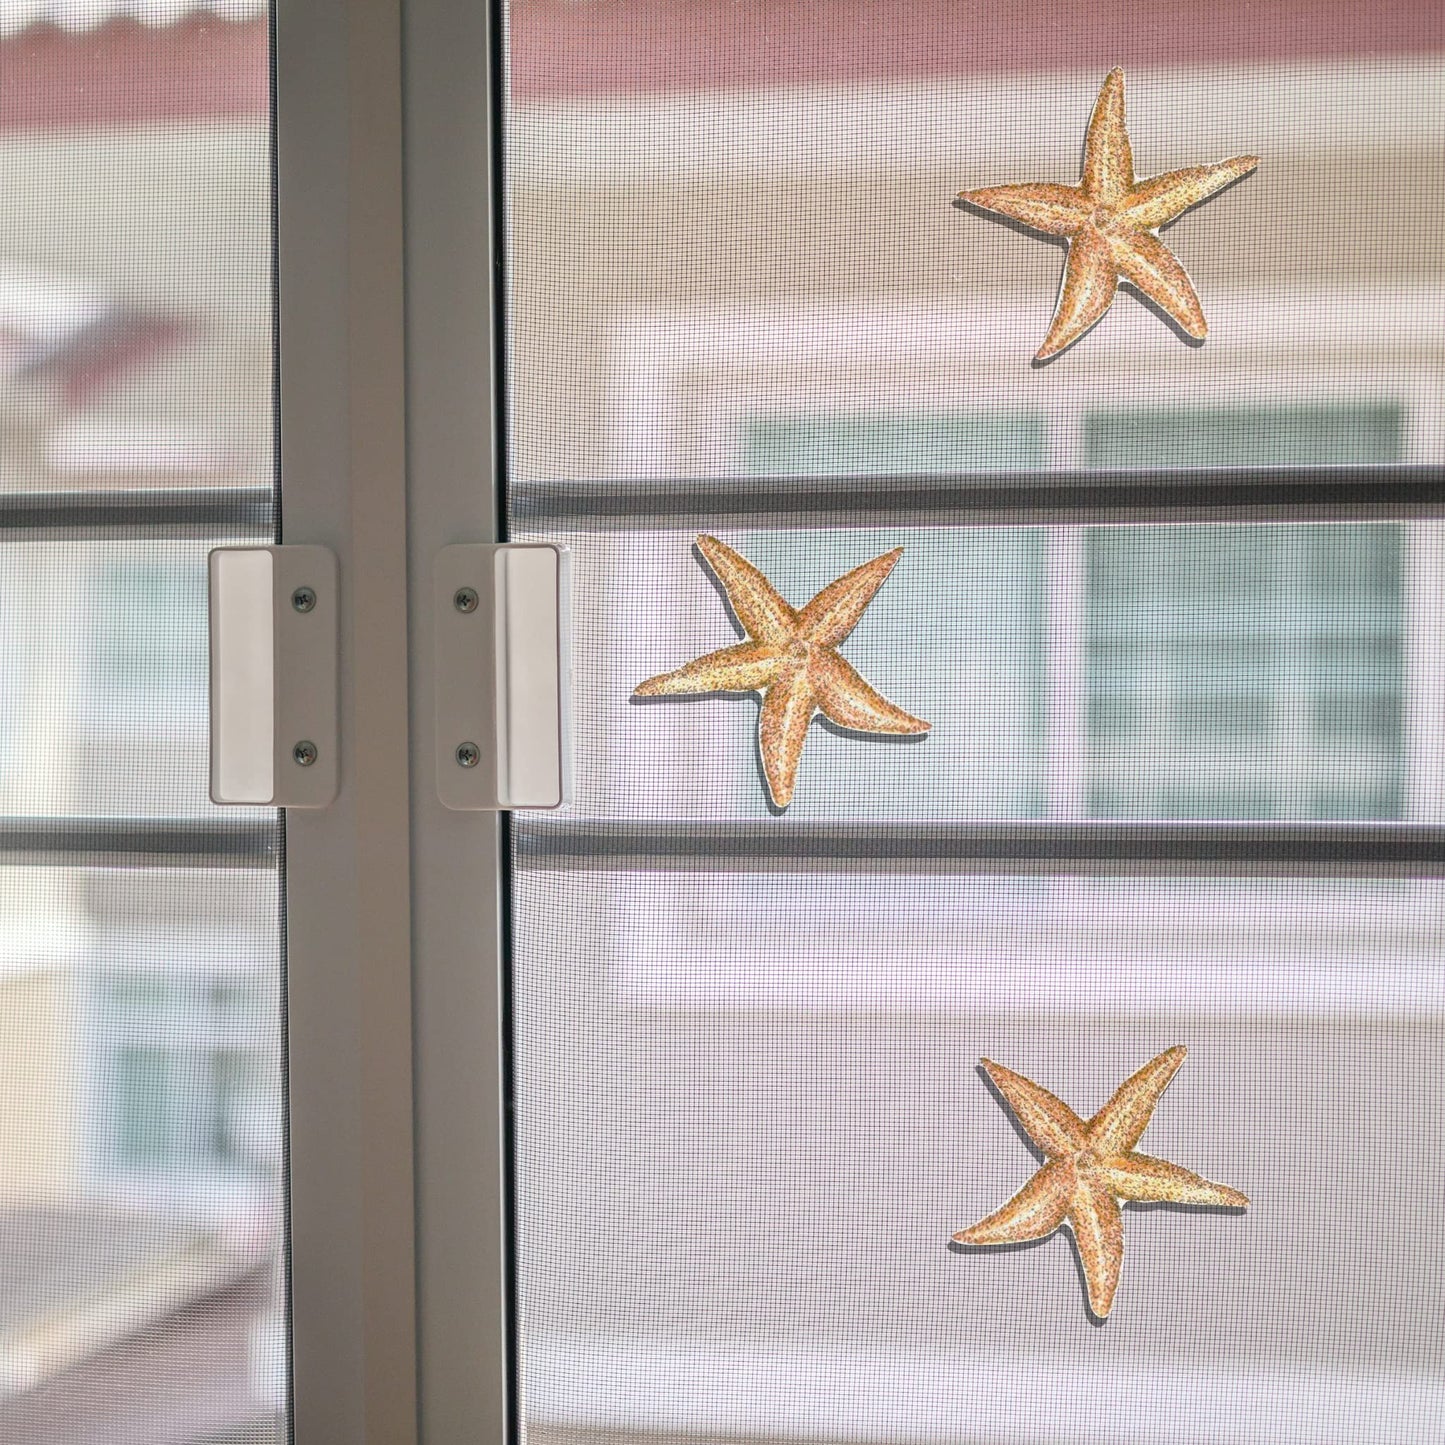 Starfish (5.5" x 5.5")